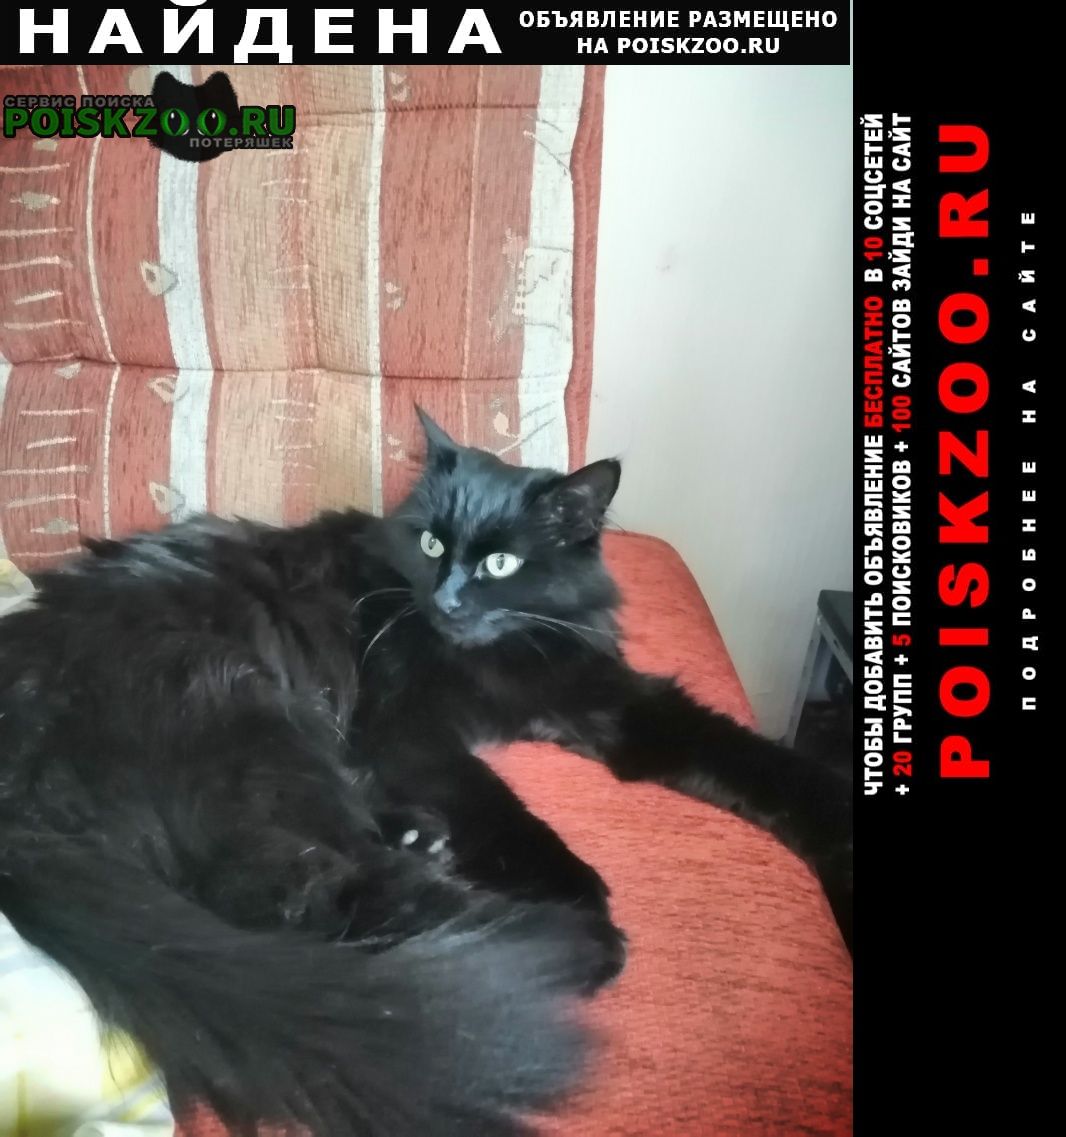 Москва Найдена кошка район ховрино. черная кошка